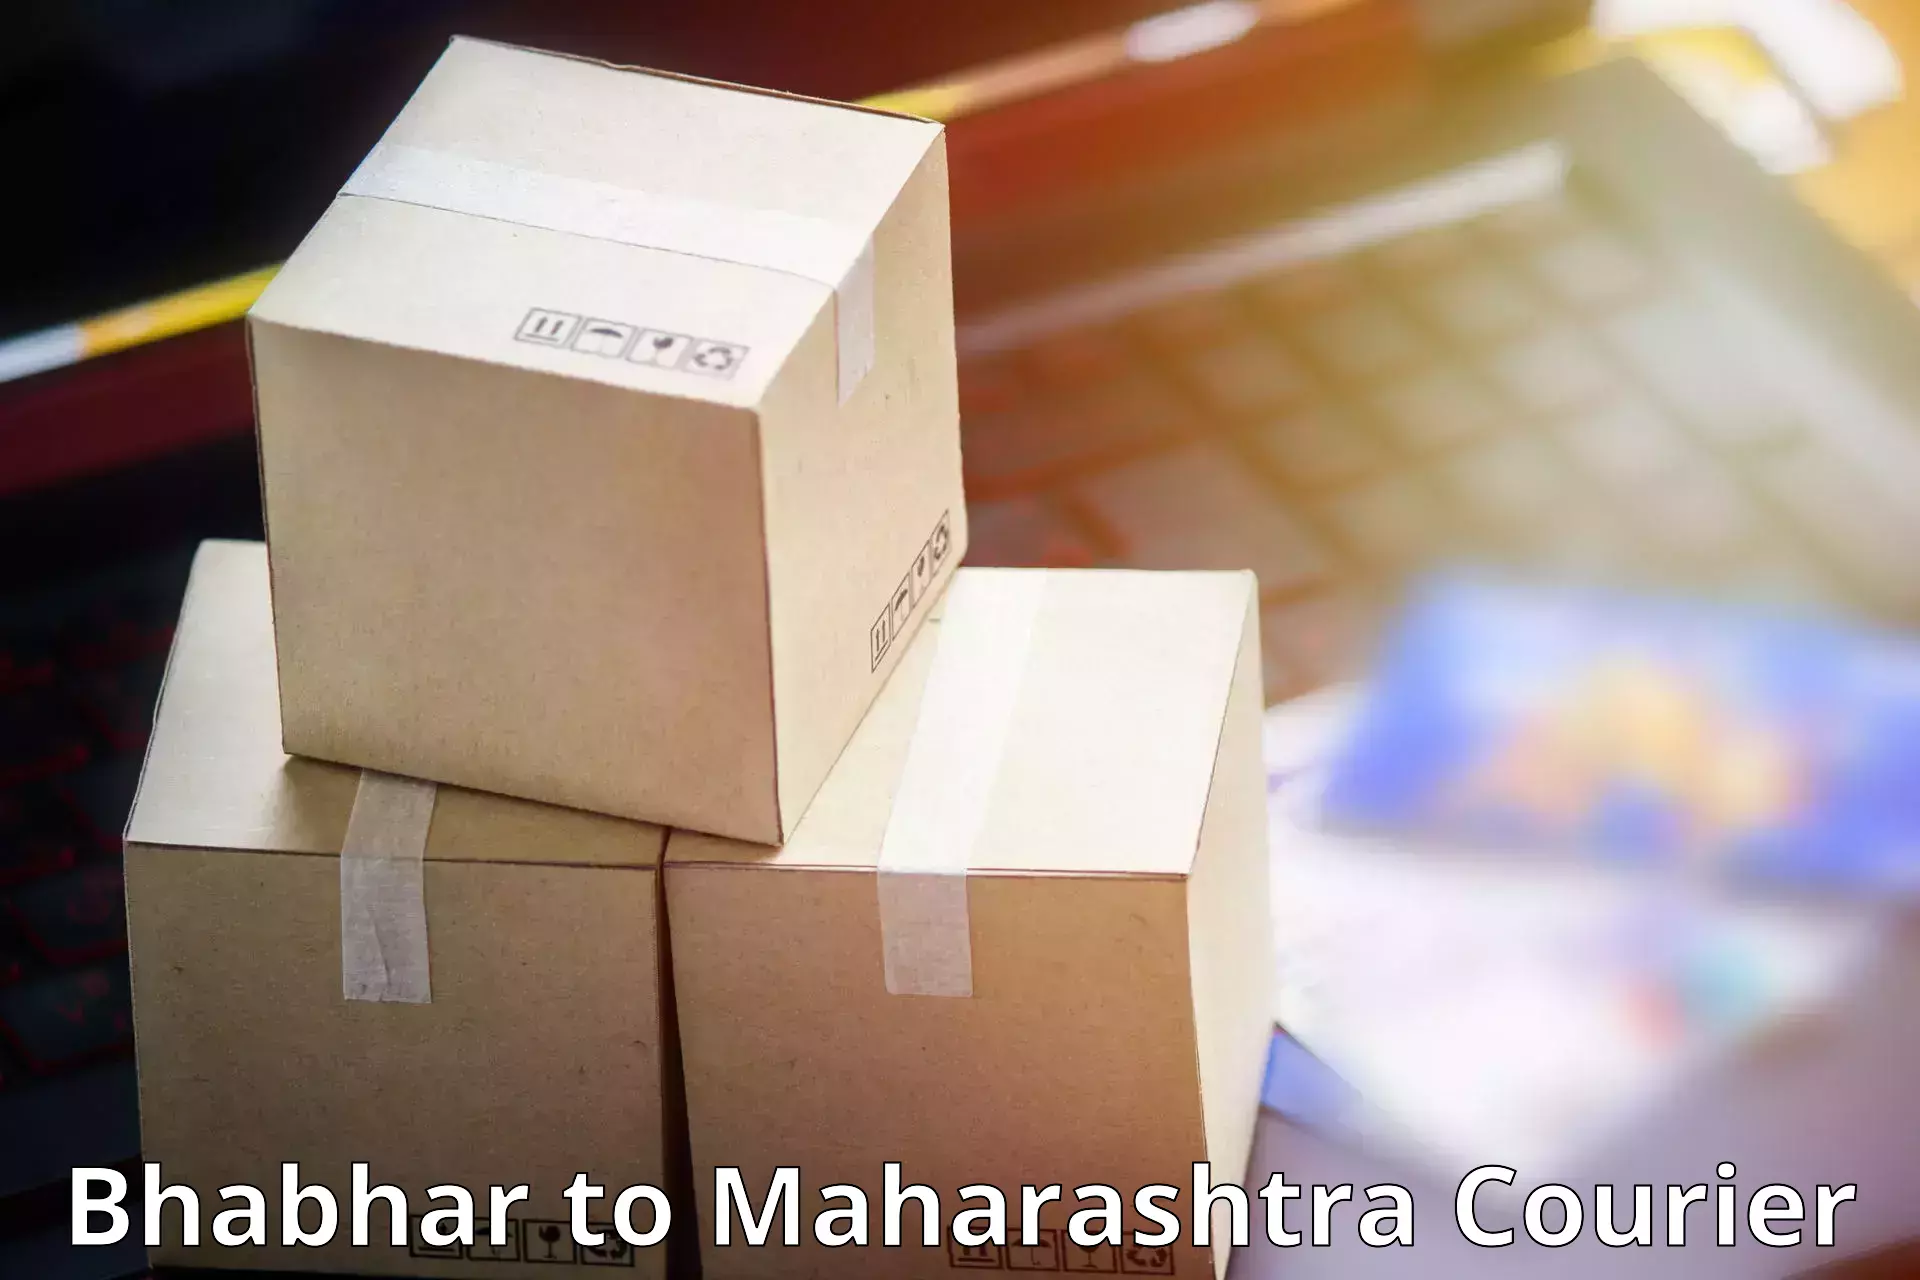 Optimized delivery routes Bhabhar to Homi Bhabha National Institute Mumbai